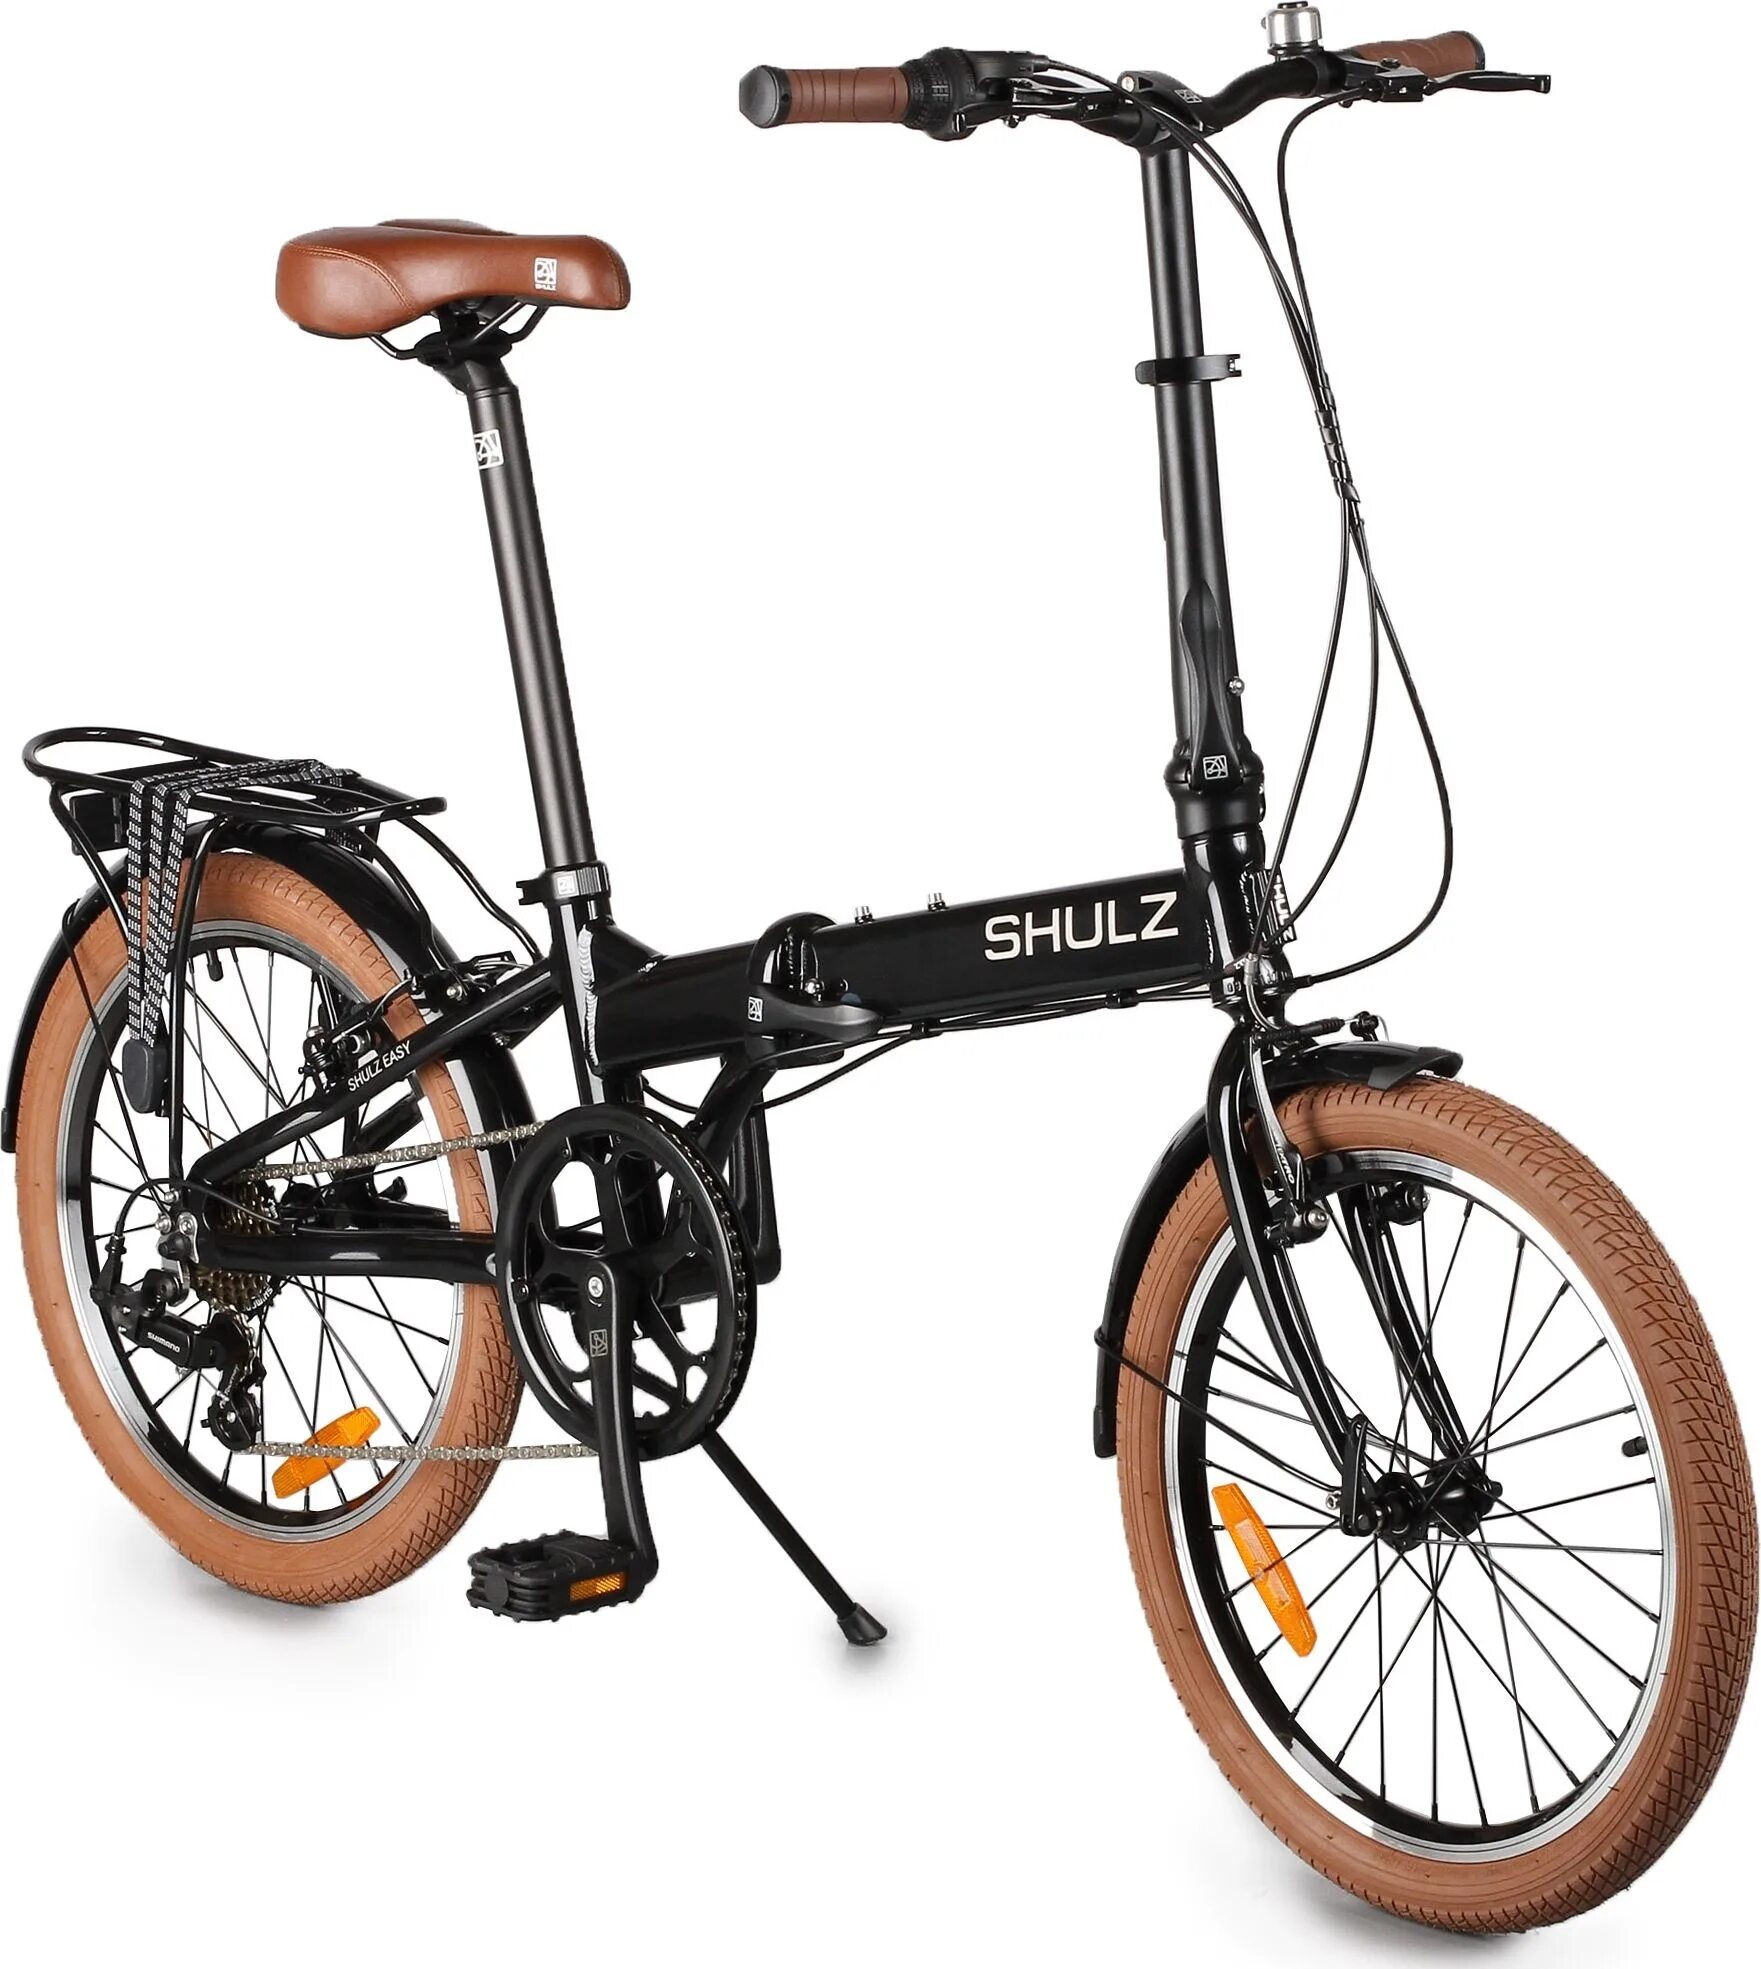 Городской велосипед Shulz easy. Складной велосипед Shulz easy. Городской велосипед Shulz Lentus. Велосипед Шульц складной алюминиевый.